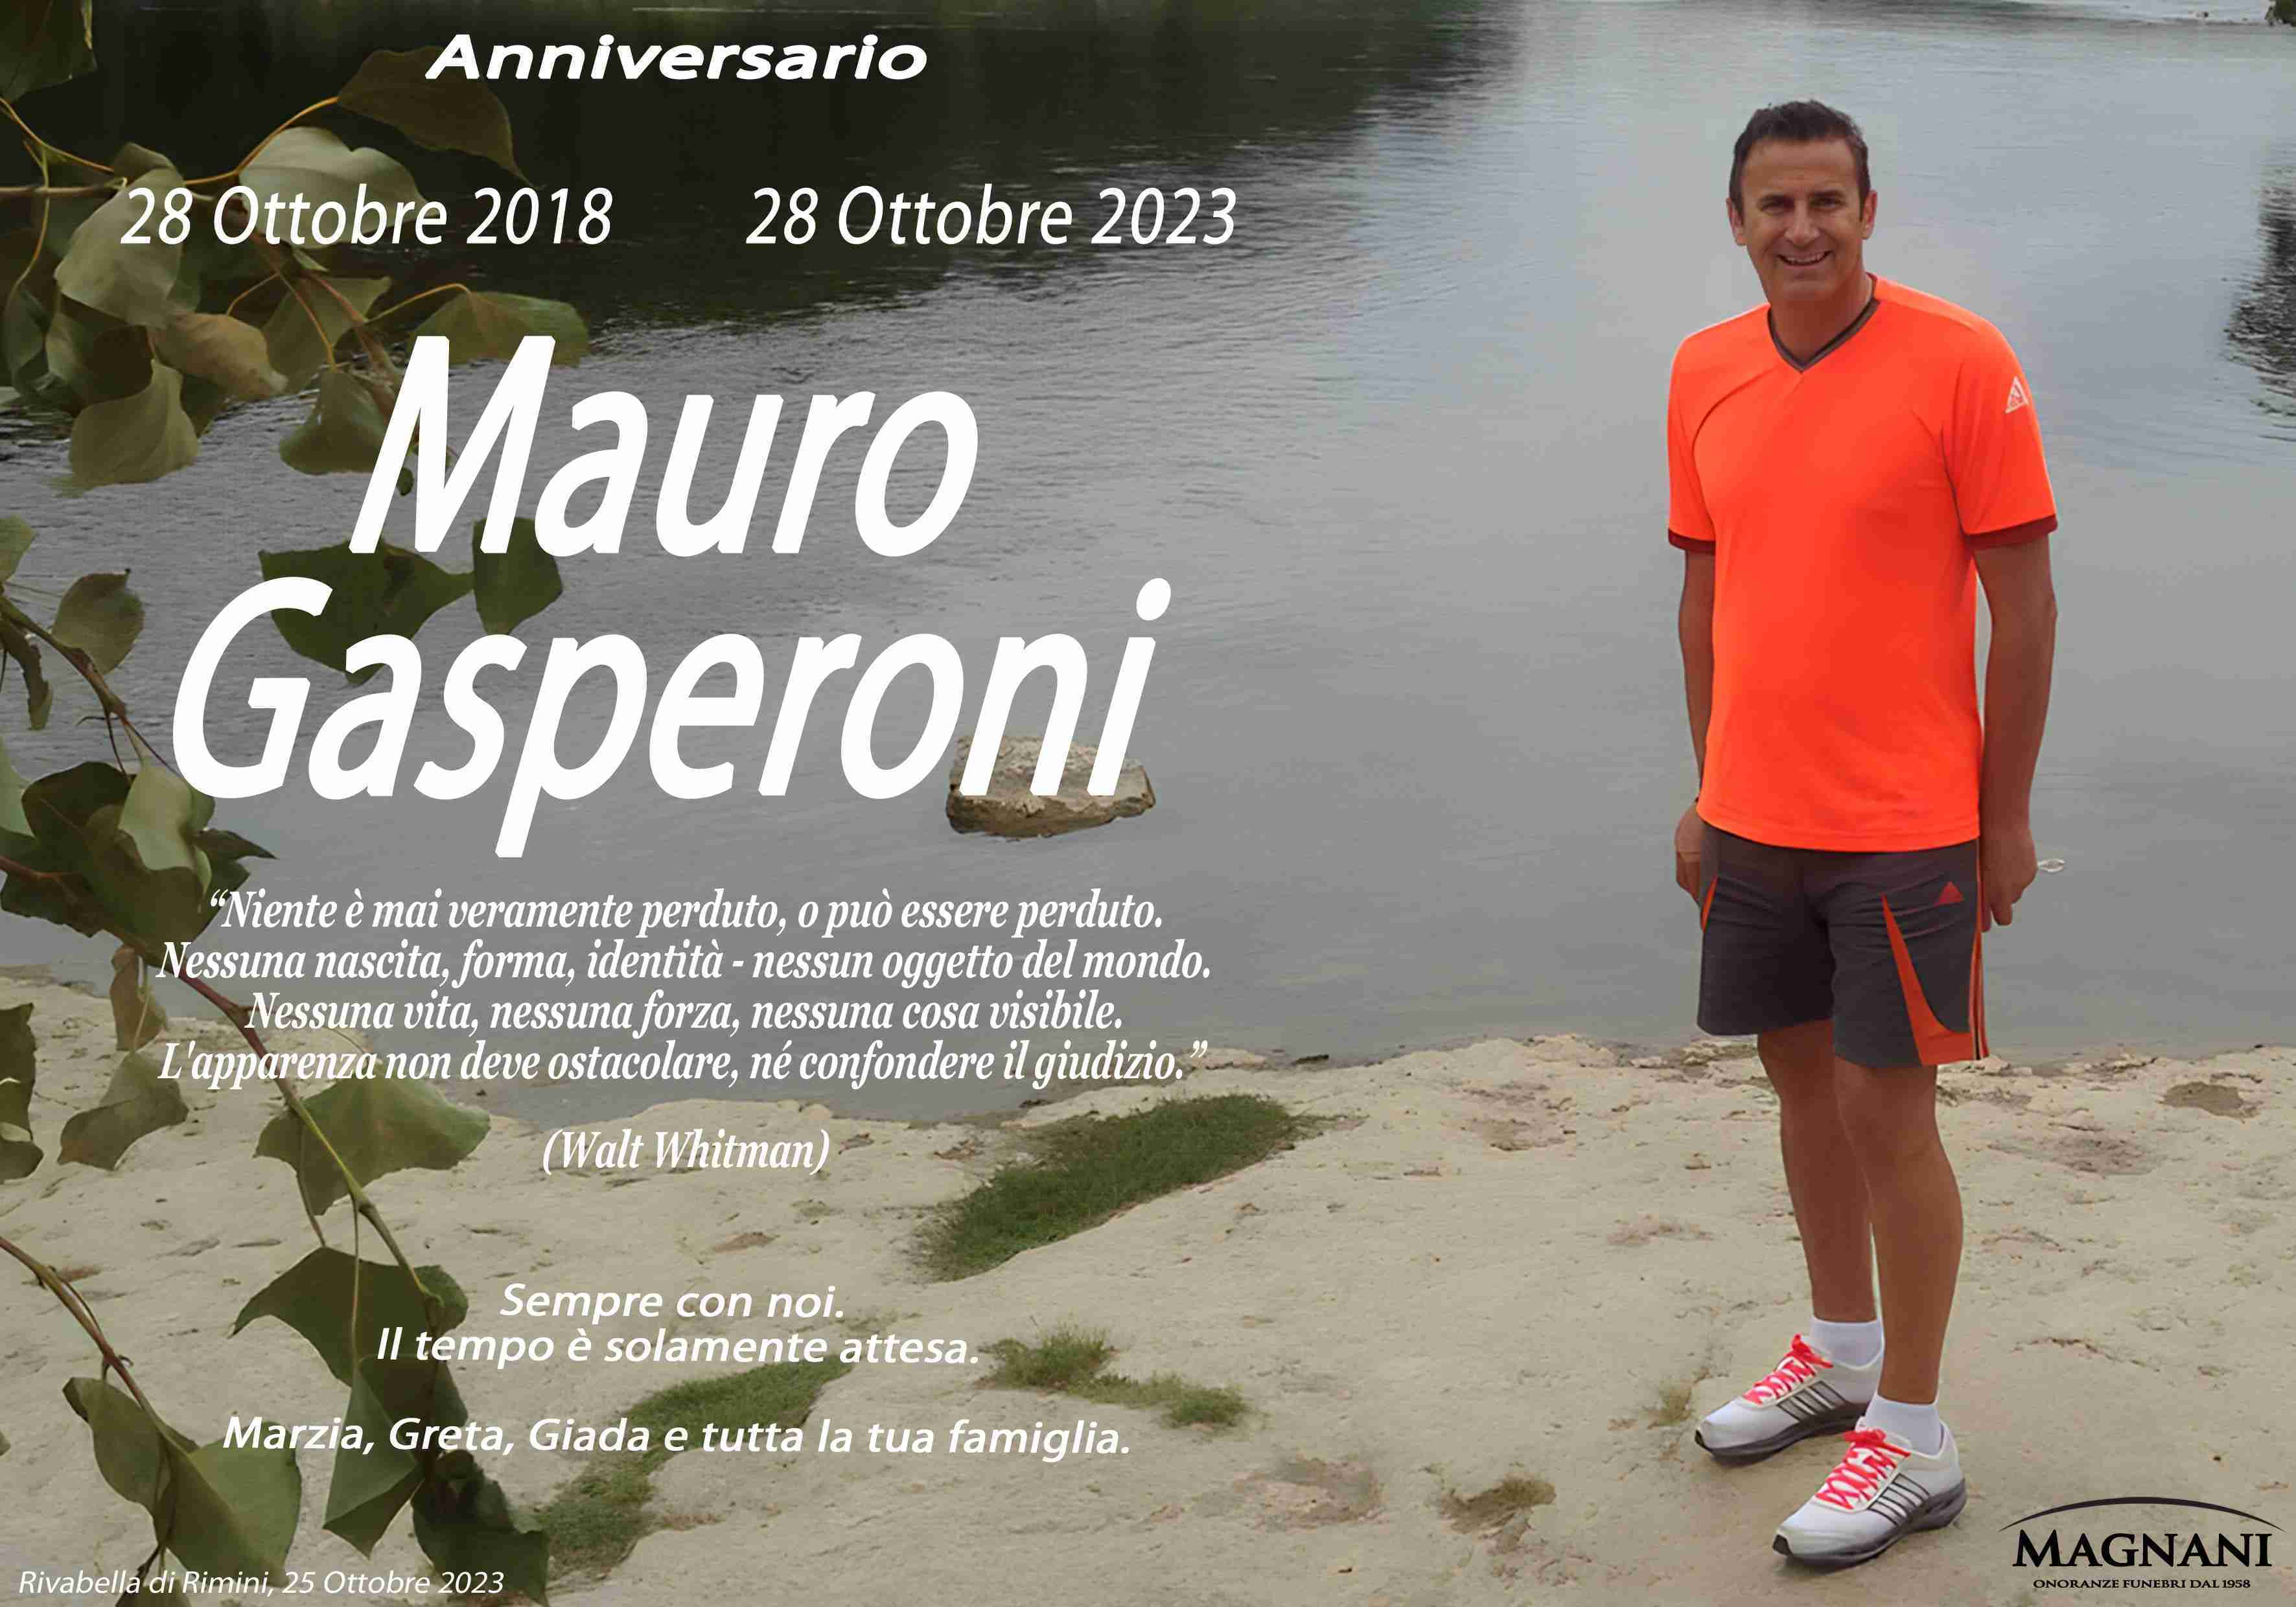 Mauro Gasperoni